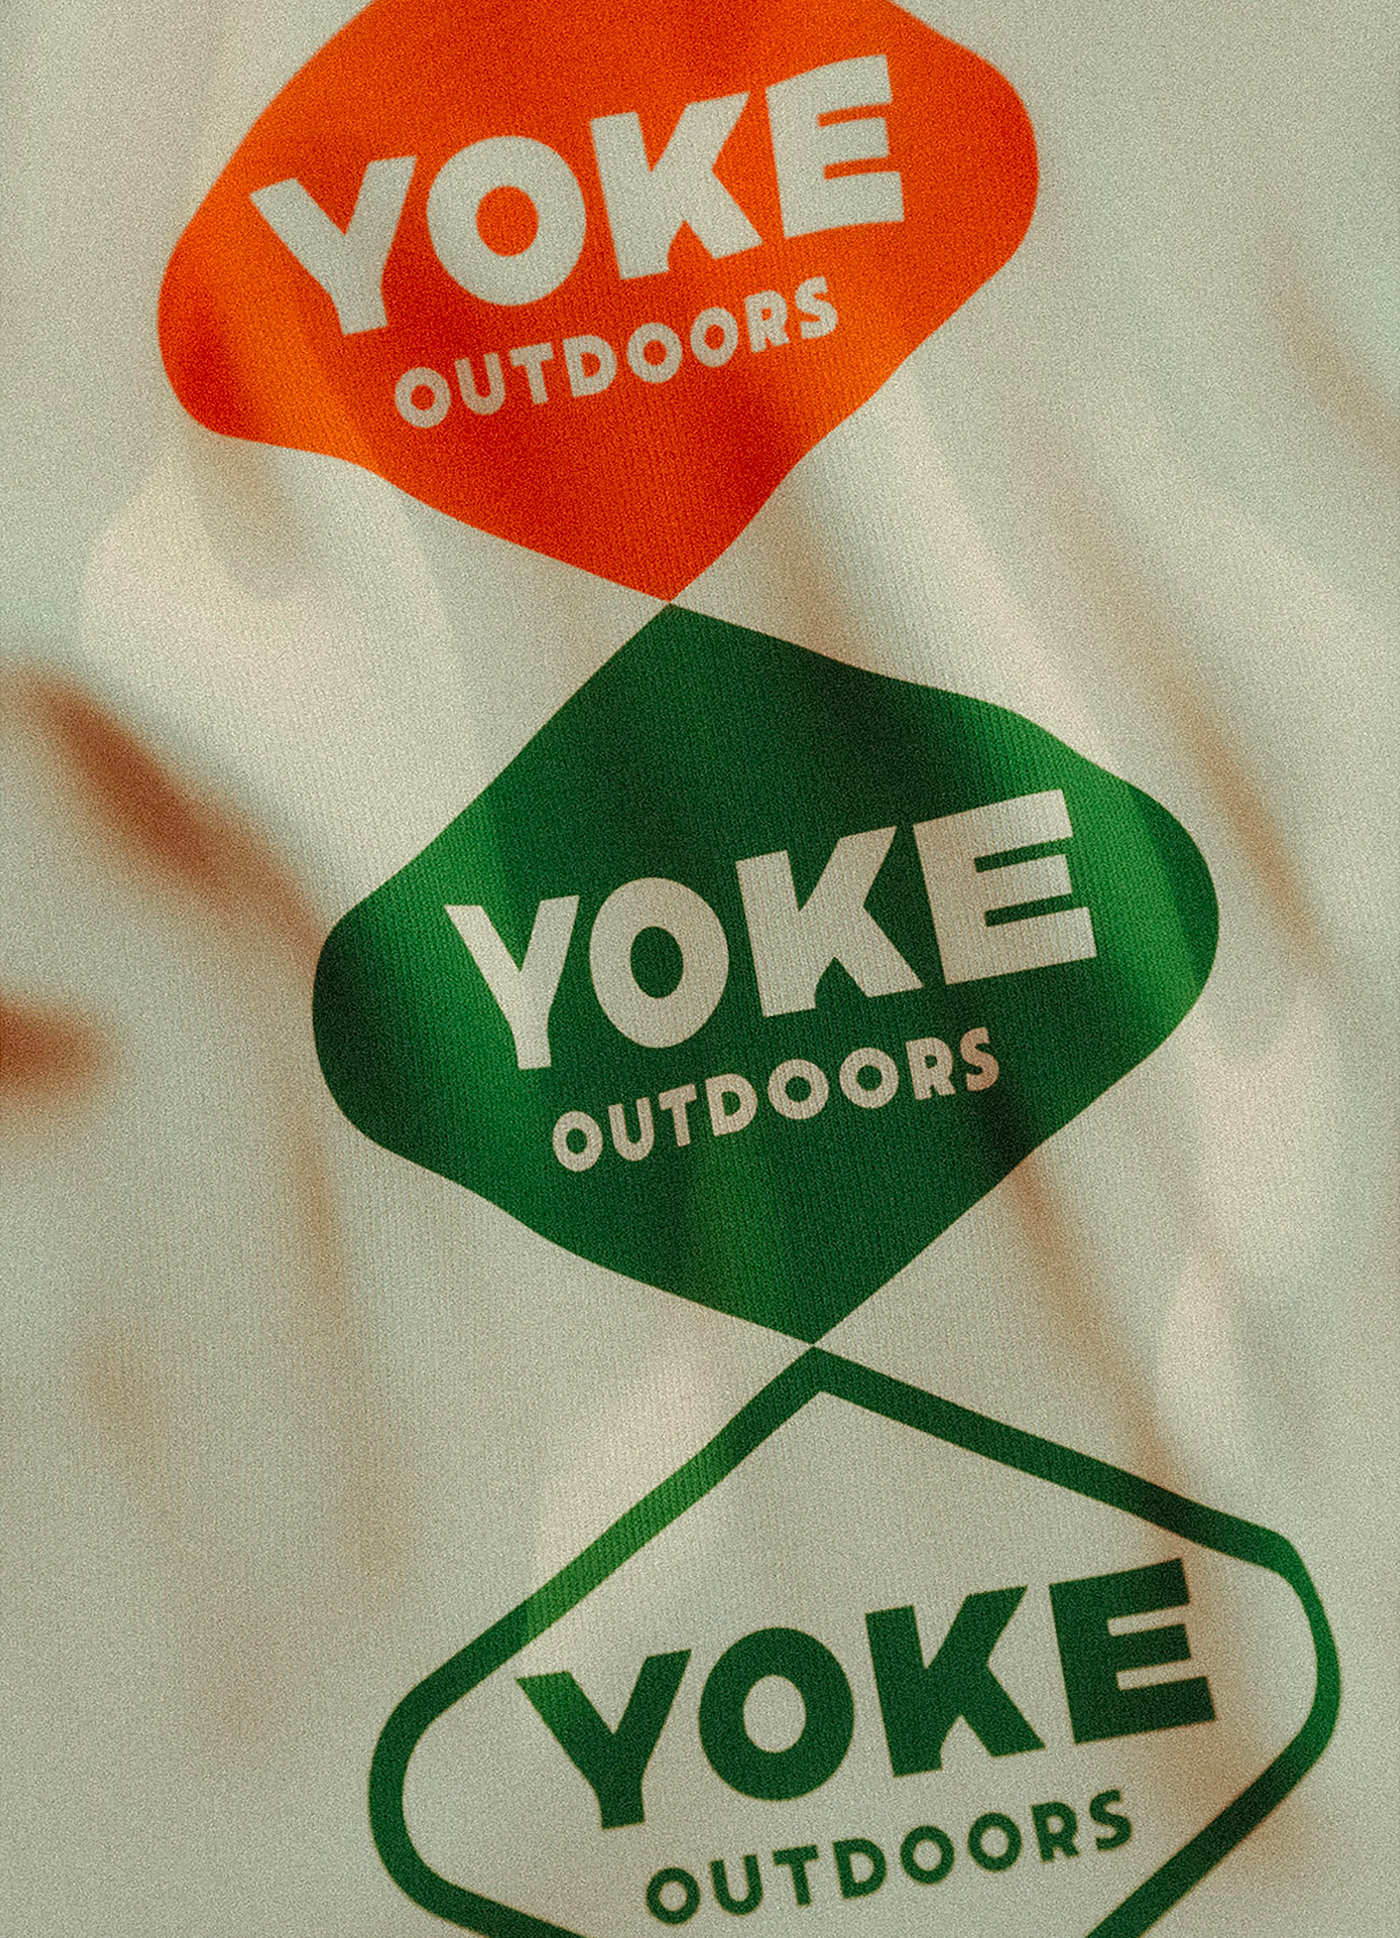 户外装备品牌Yoke炫酷标识和包装设计